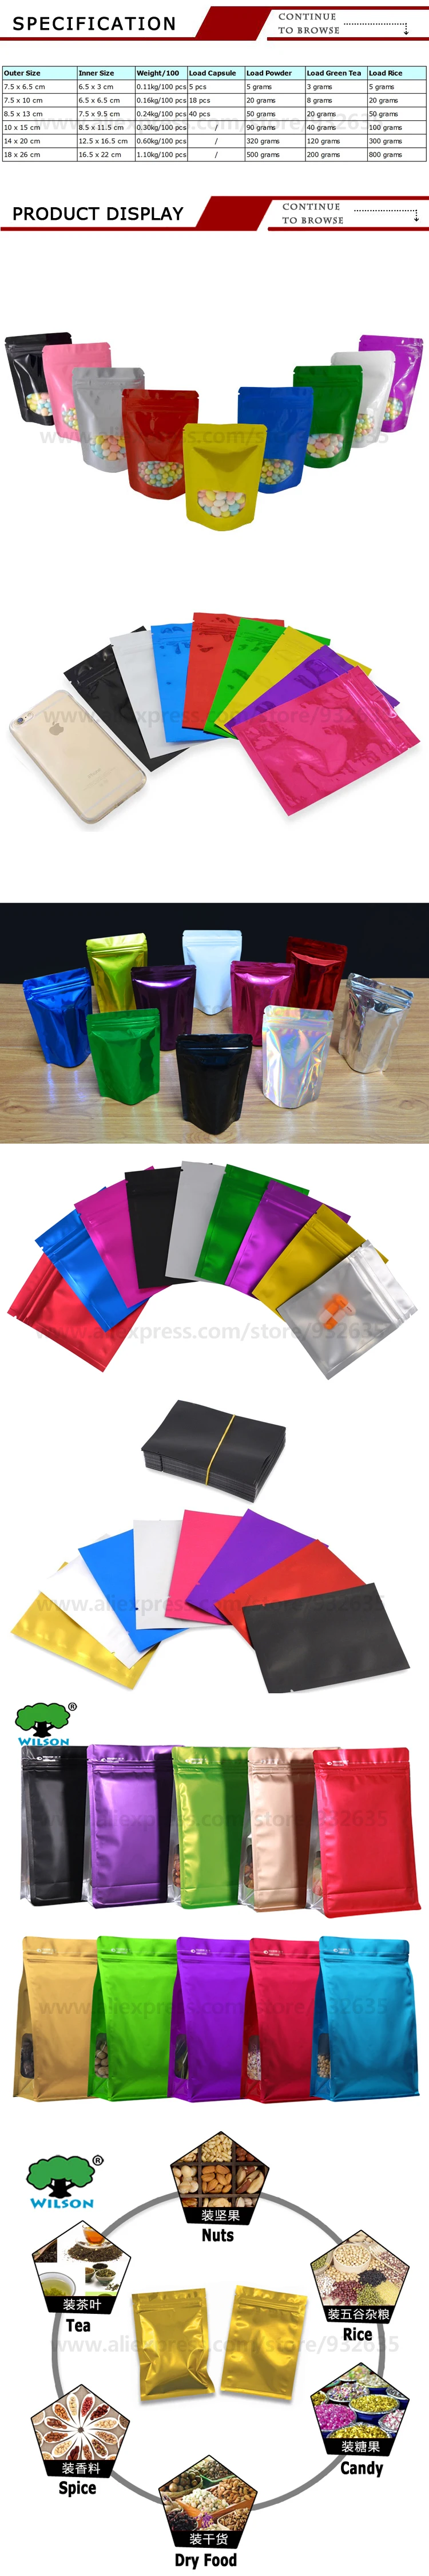 Матовая цветная сумка на молнии с одной стороны, прозрачная сумка на молнии из фольги, сумка для хранения продуктов, много цветов, маленький образец подарка 7,5x10/8,5x13/10x15 см